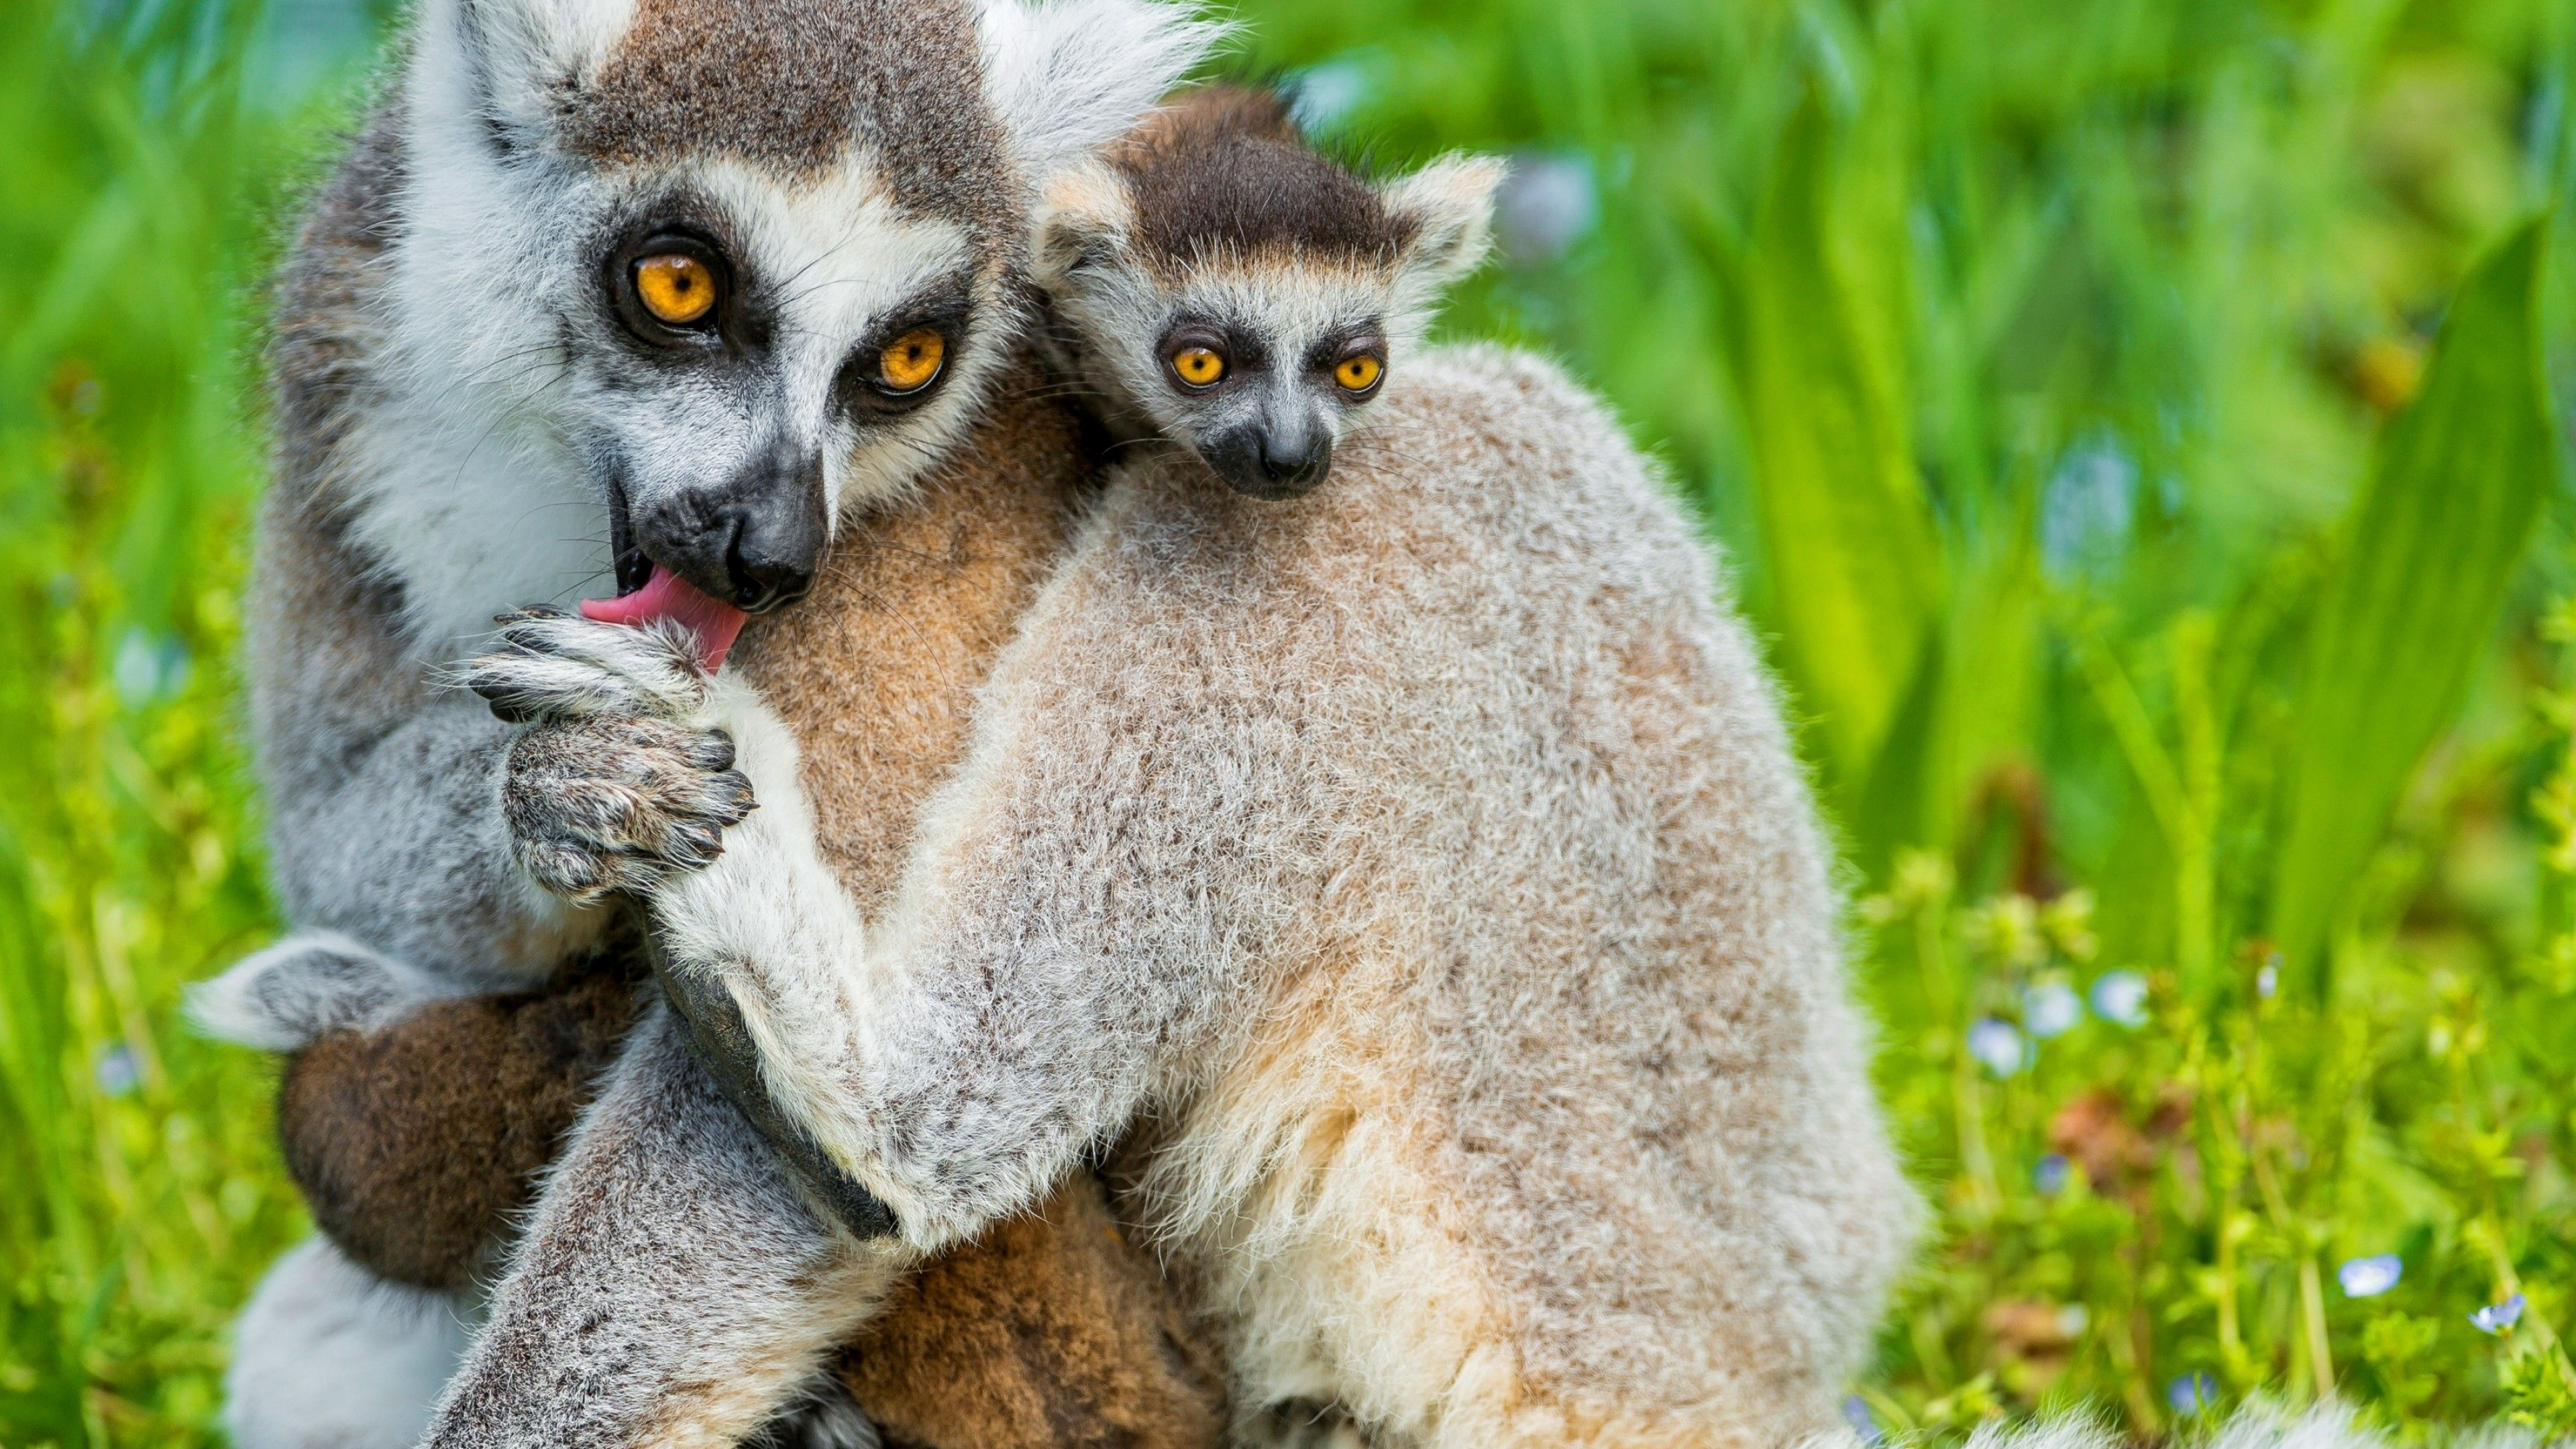 Cute lemur wallpapers, Adorable primates, Nature backgrounds, Wildlife, 3840x2160 4K Desktop